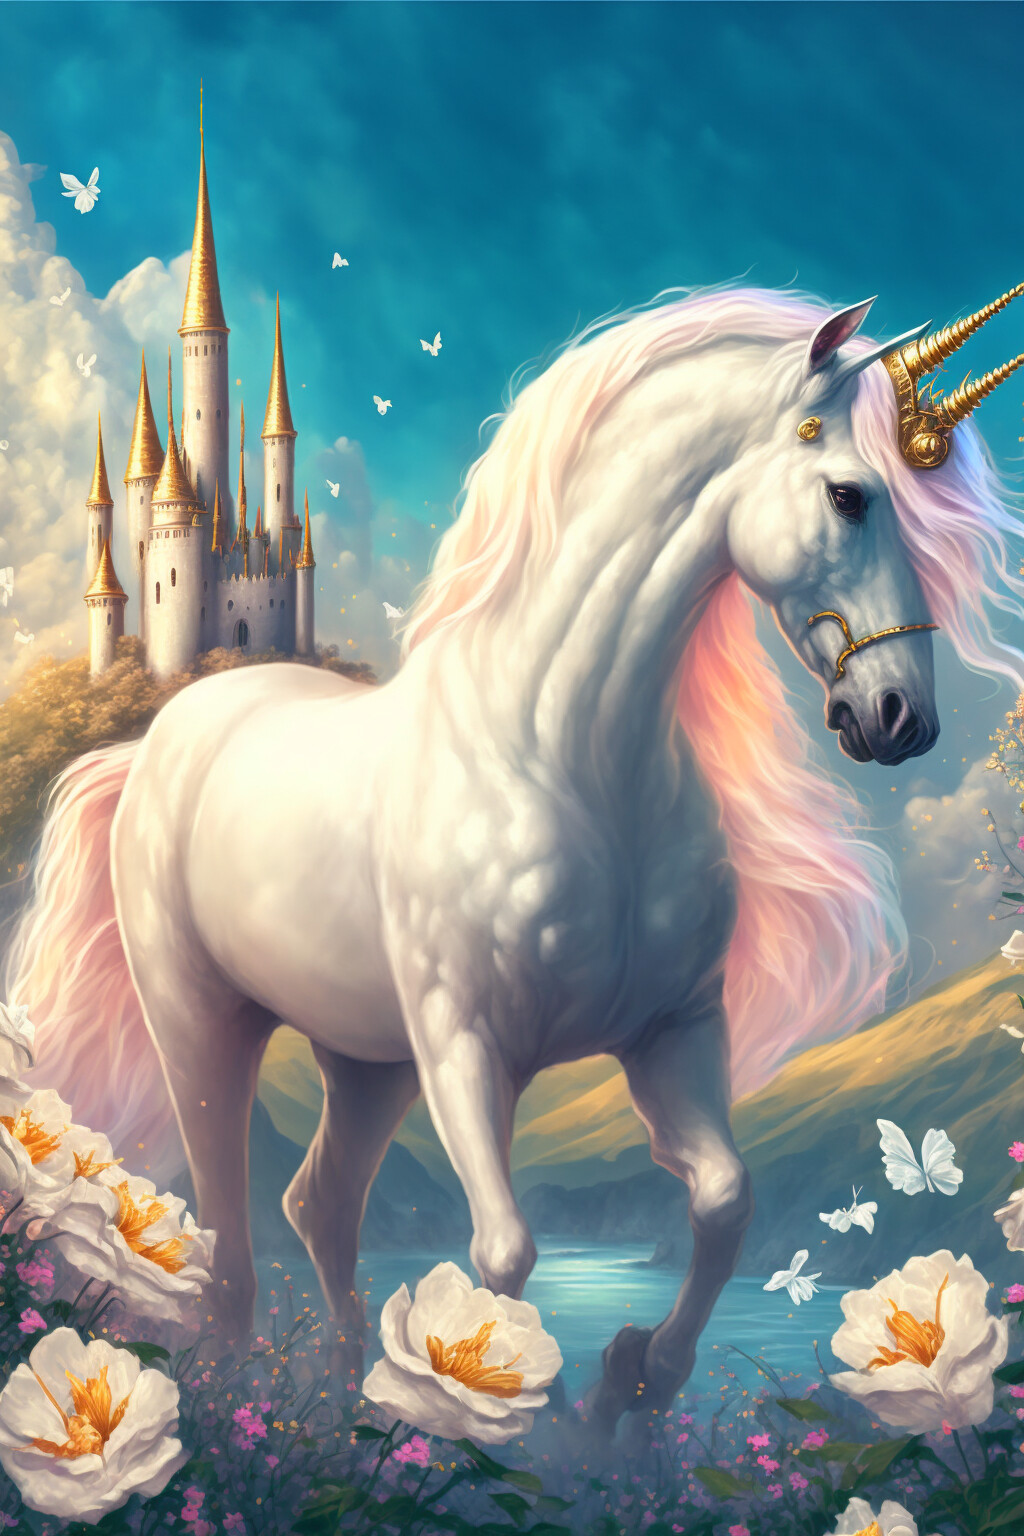 PicSo_ai - Unicorn and castle